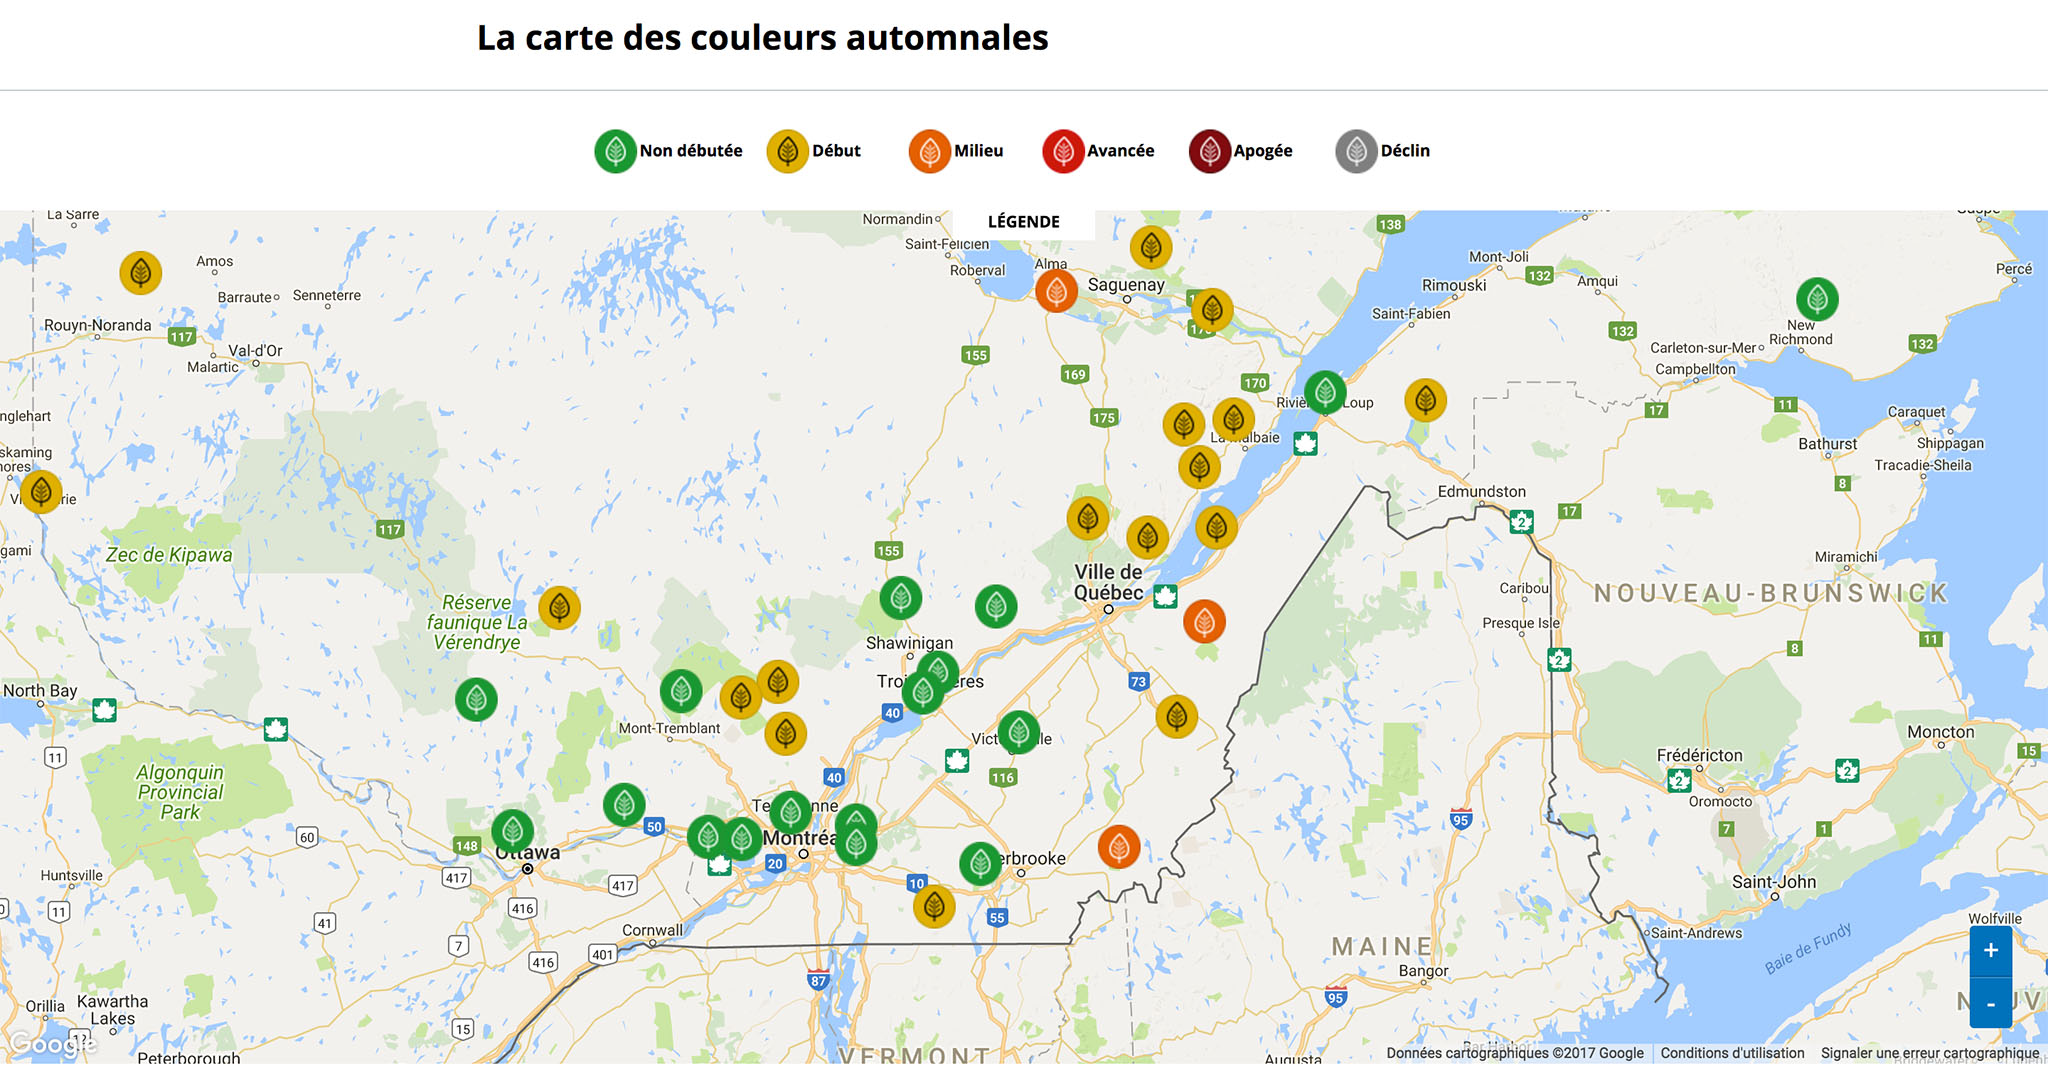 La carte des couleurs automnales du Québec dans chacun des parcs pendant l'été indien